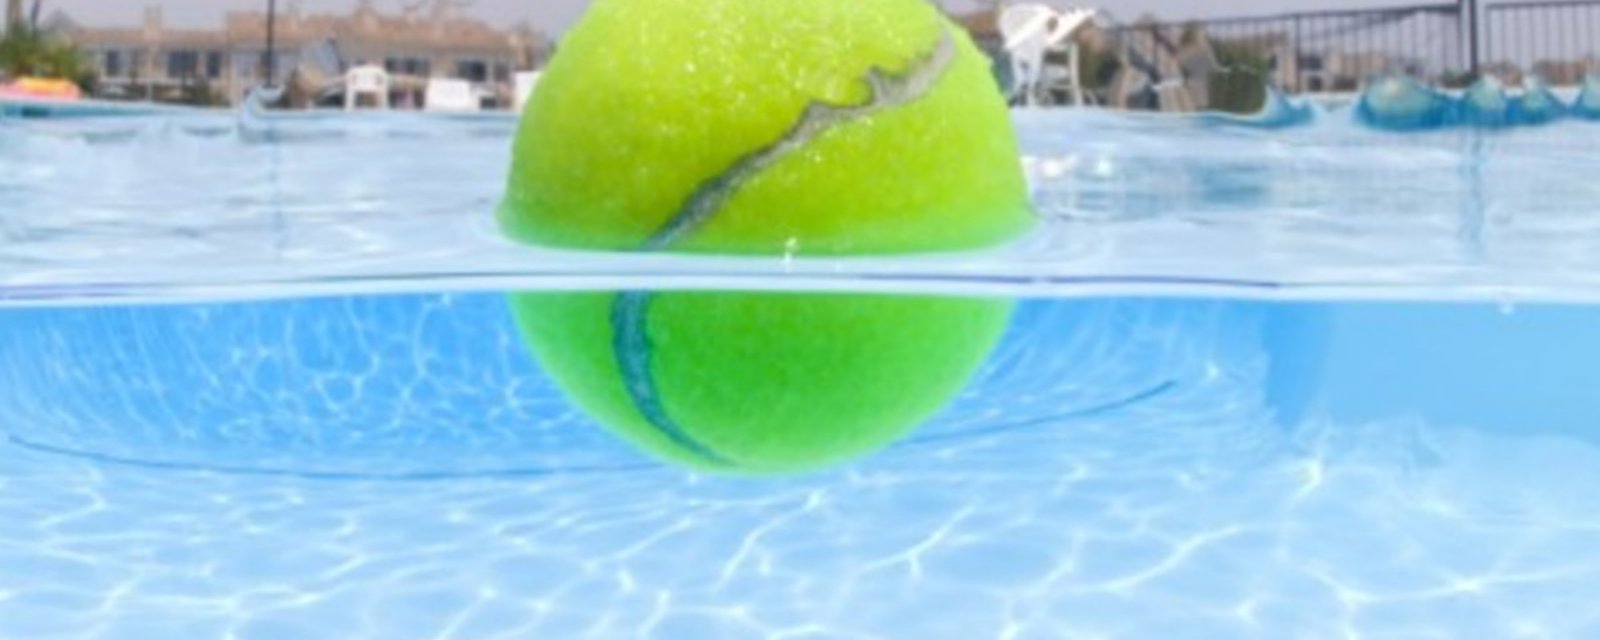 Aussitôt que les nageurs sortent de sa piscine, il lance quelques balles de tennis dans l’eau. La raison est étonnante!